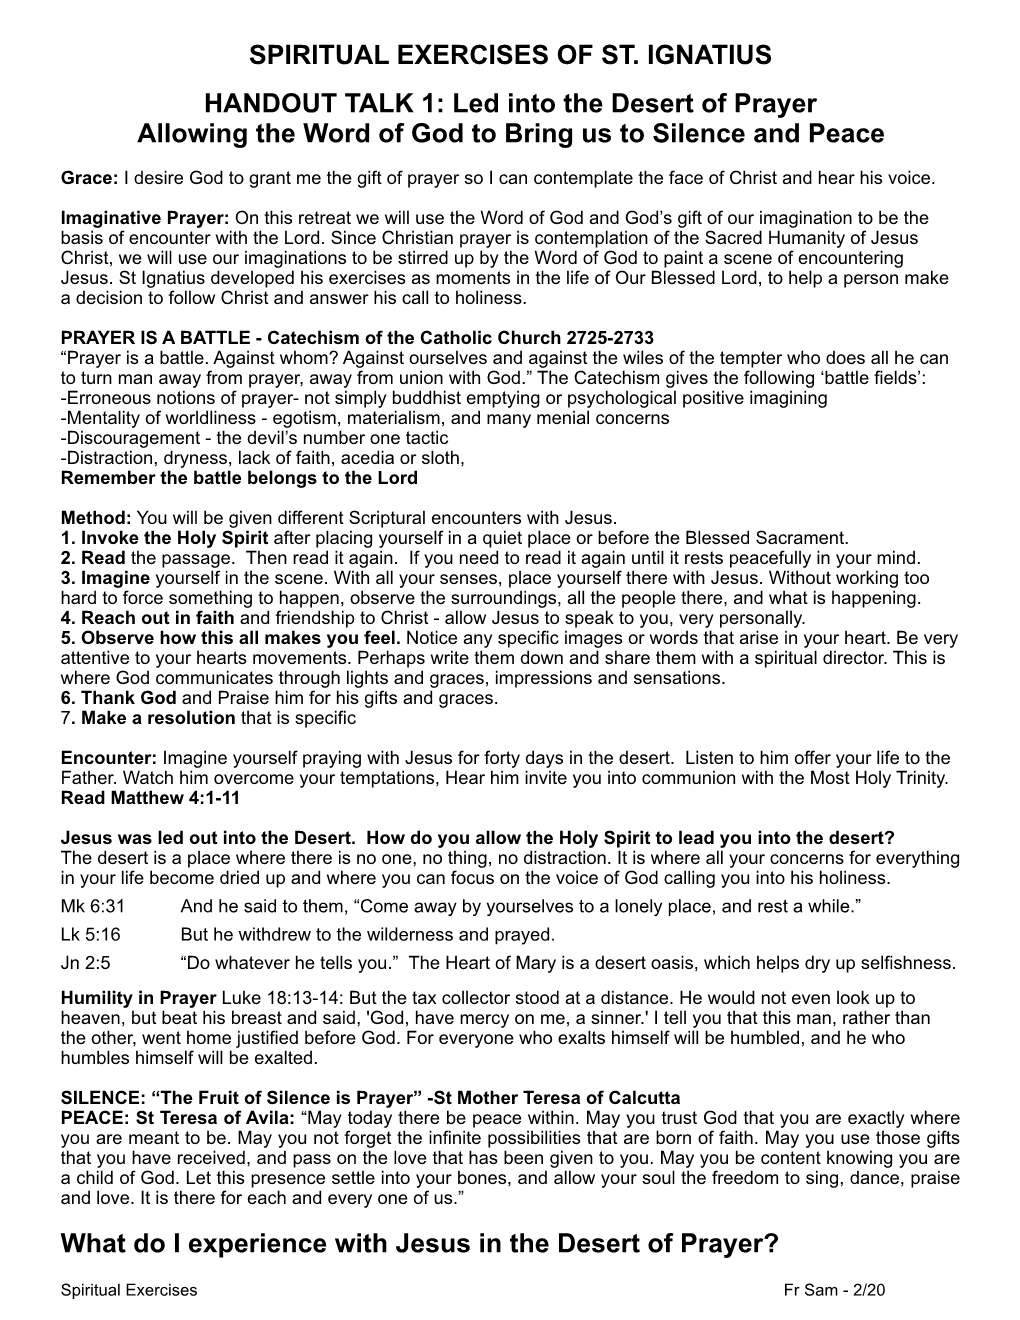 Fr Sam 2-20 Handouts Spiritual Exercise